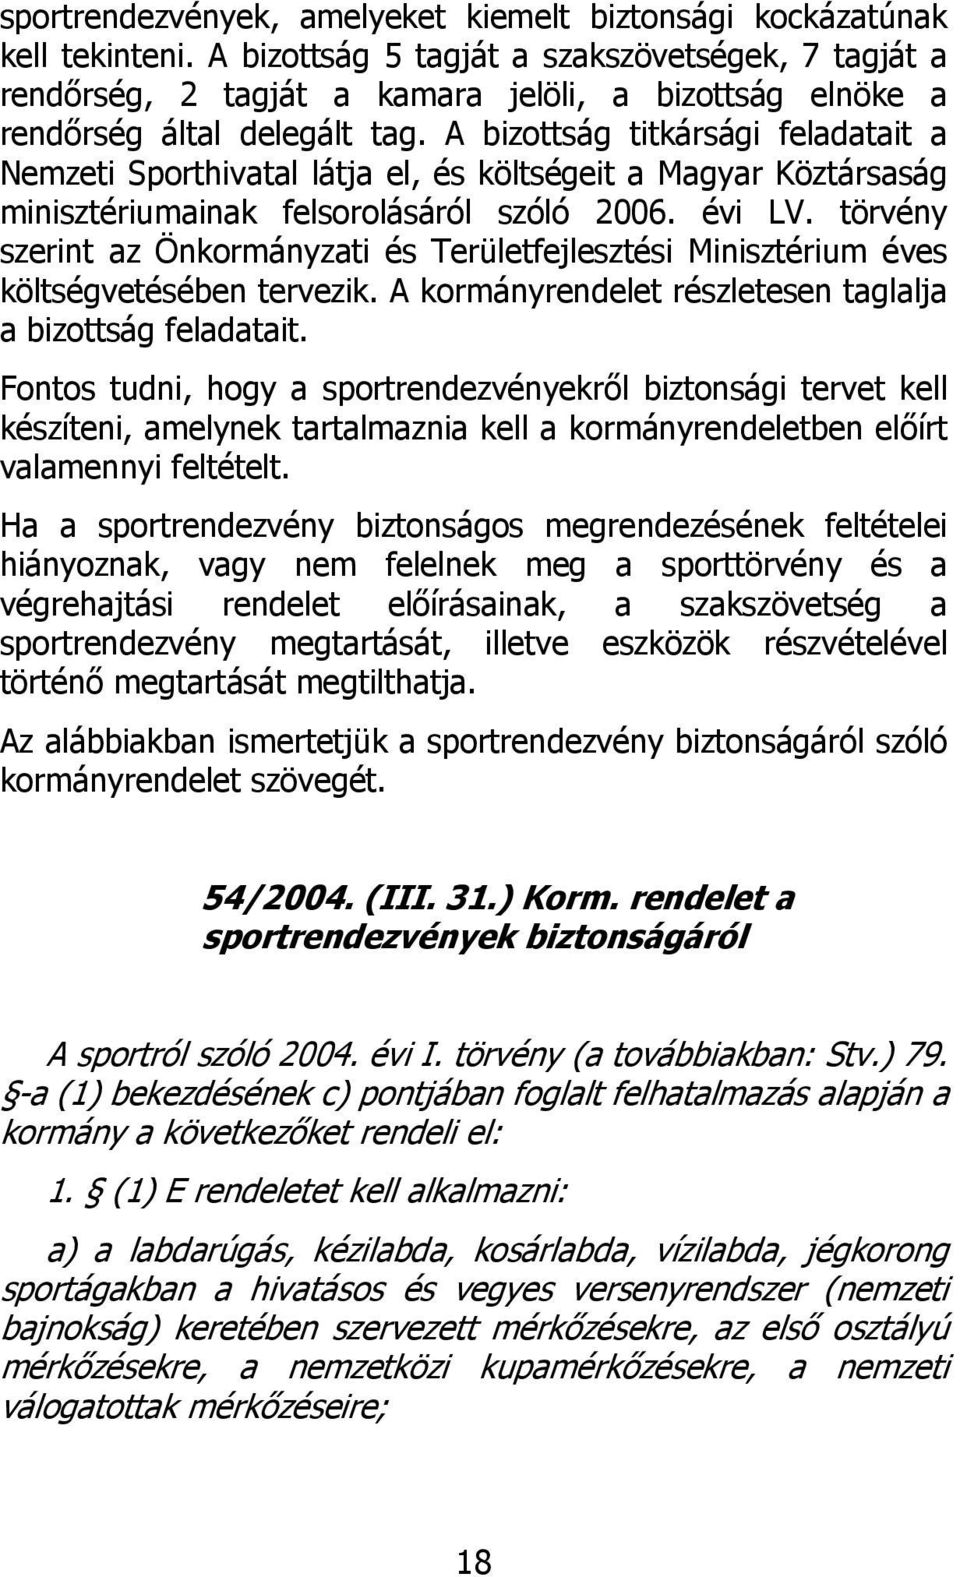 A bizottság titkársági feladatait a Nemzeti Sporthivatal látja el, és költségeit a Magyar Köztársaság minisztériumainak felsorolásáról szóló 2006. évi LV.